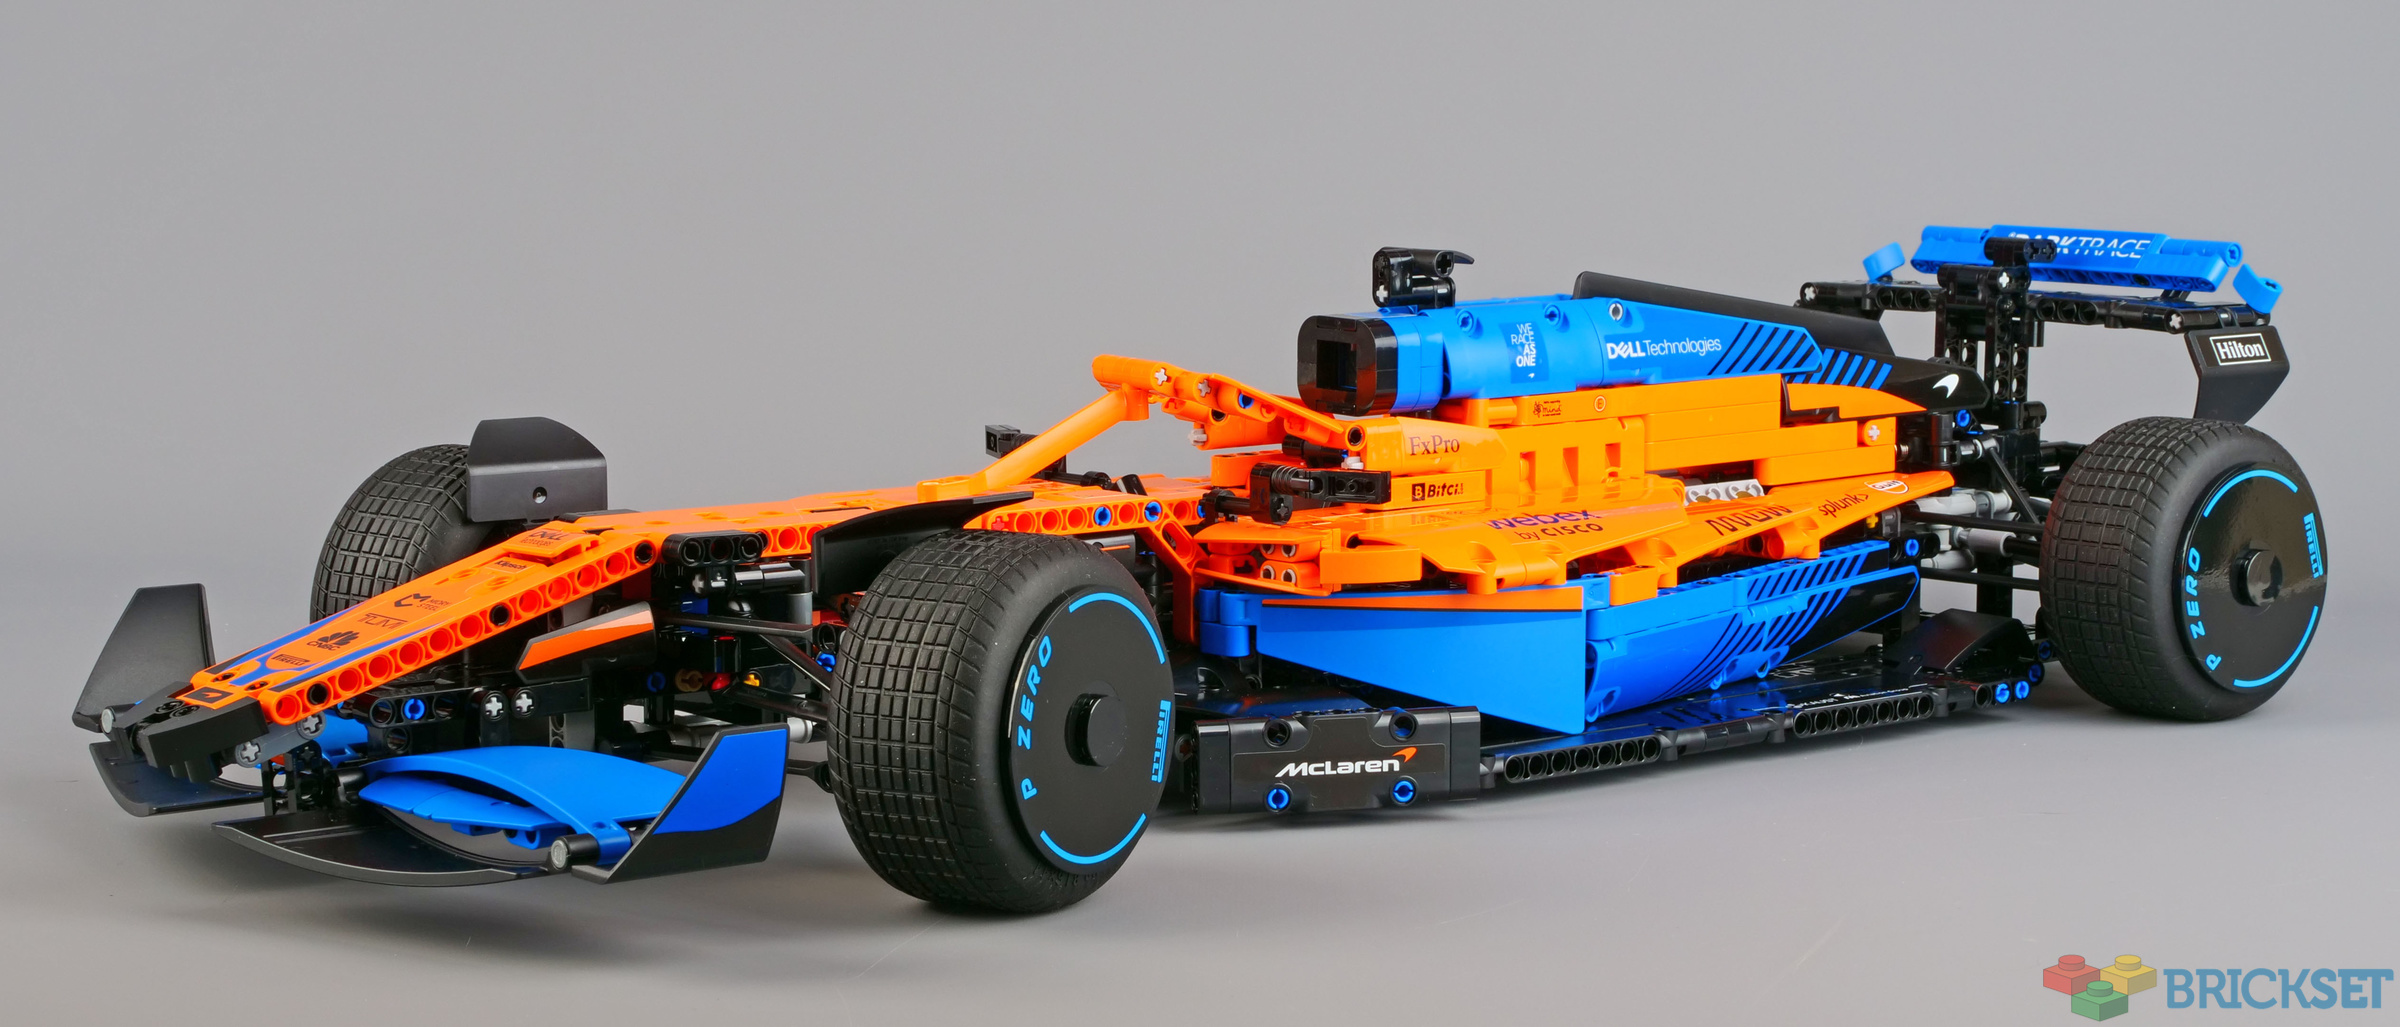 LEGO Technic 42141 McLaren F1 (2021.5) race car detailed building review 